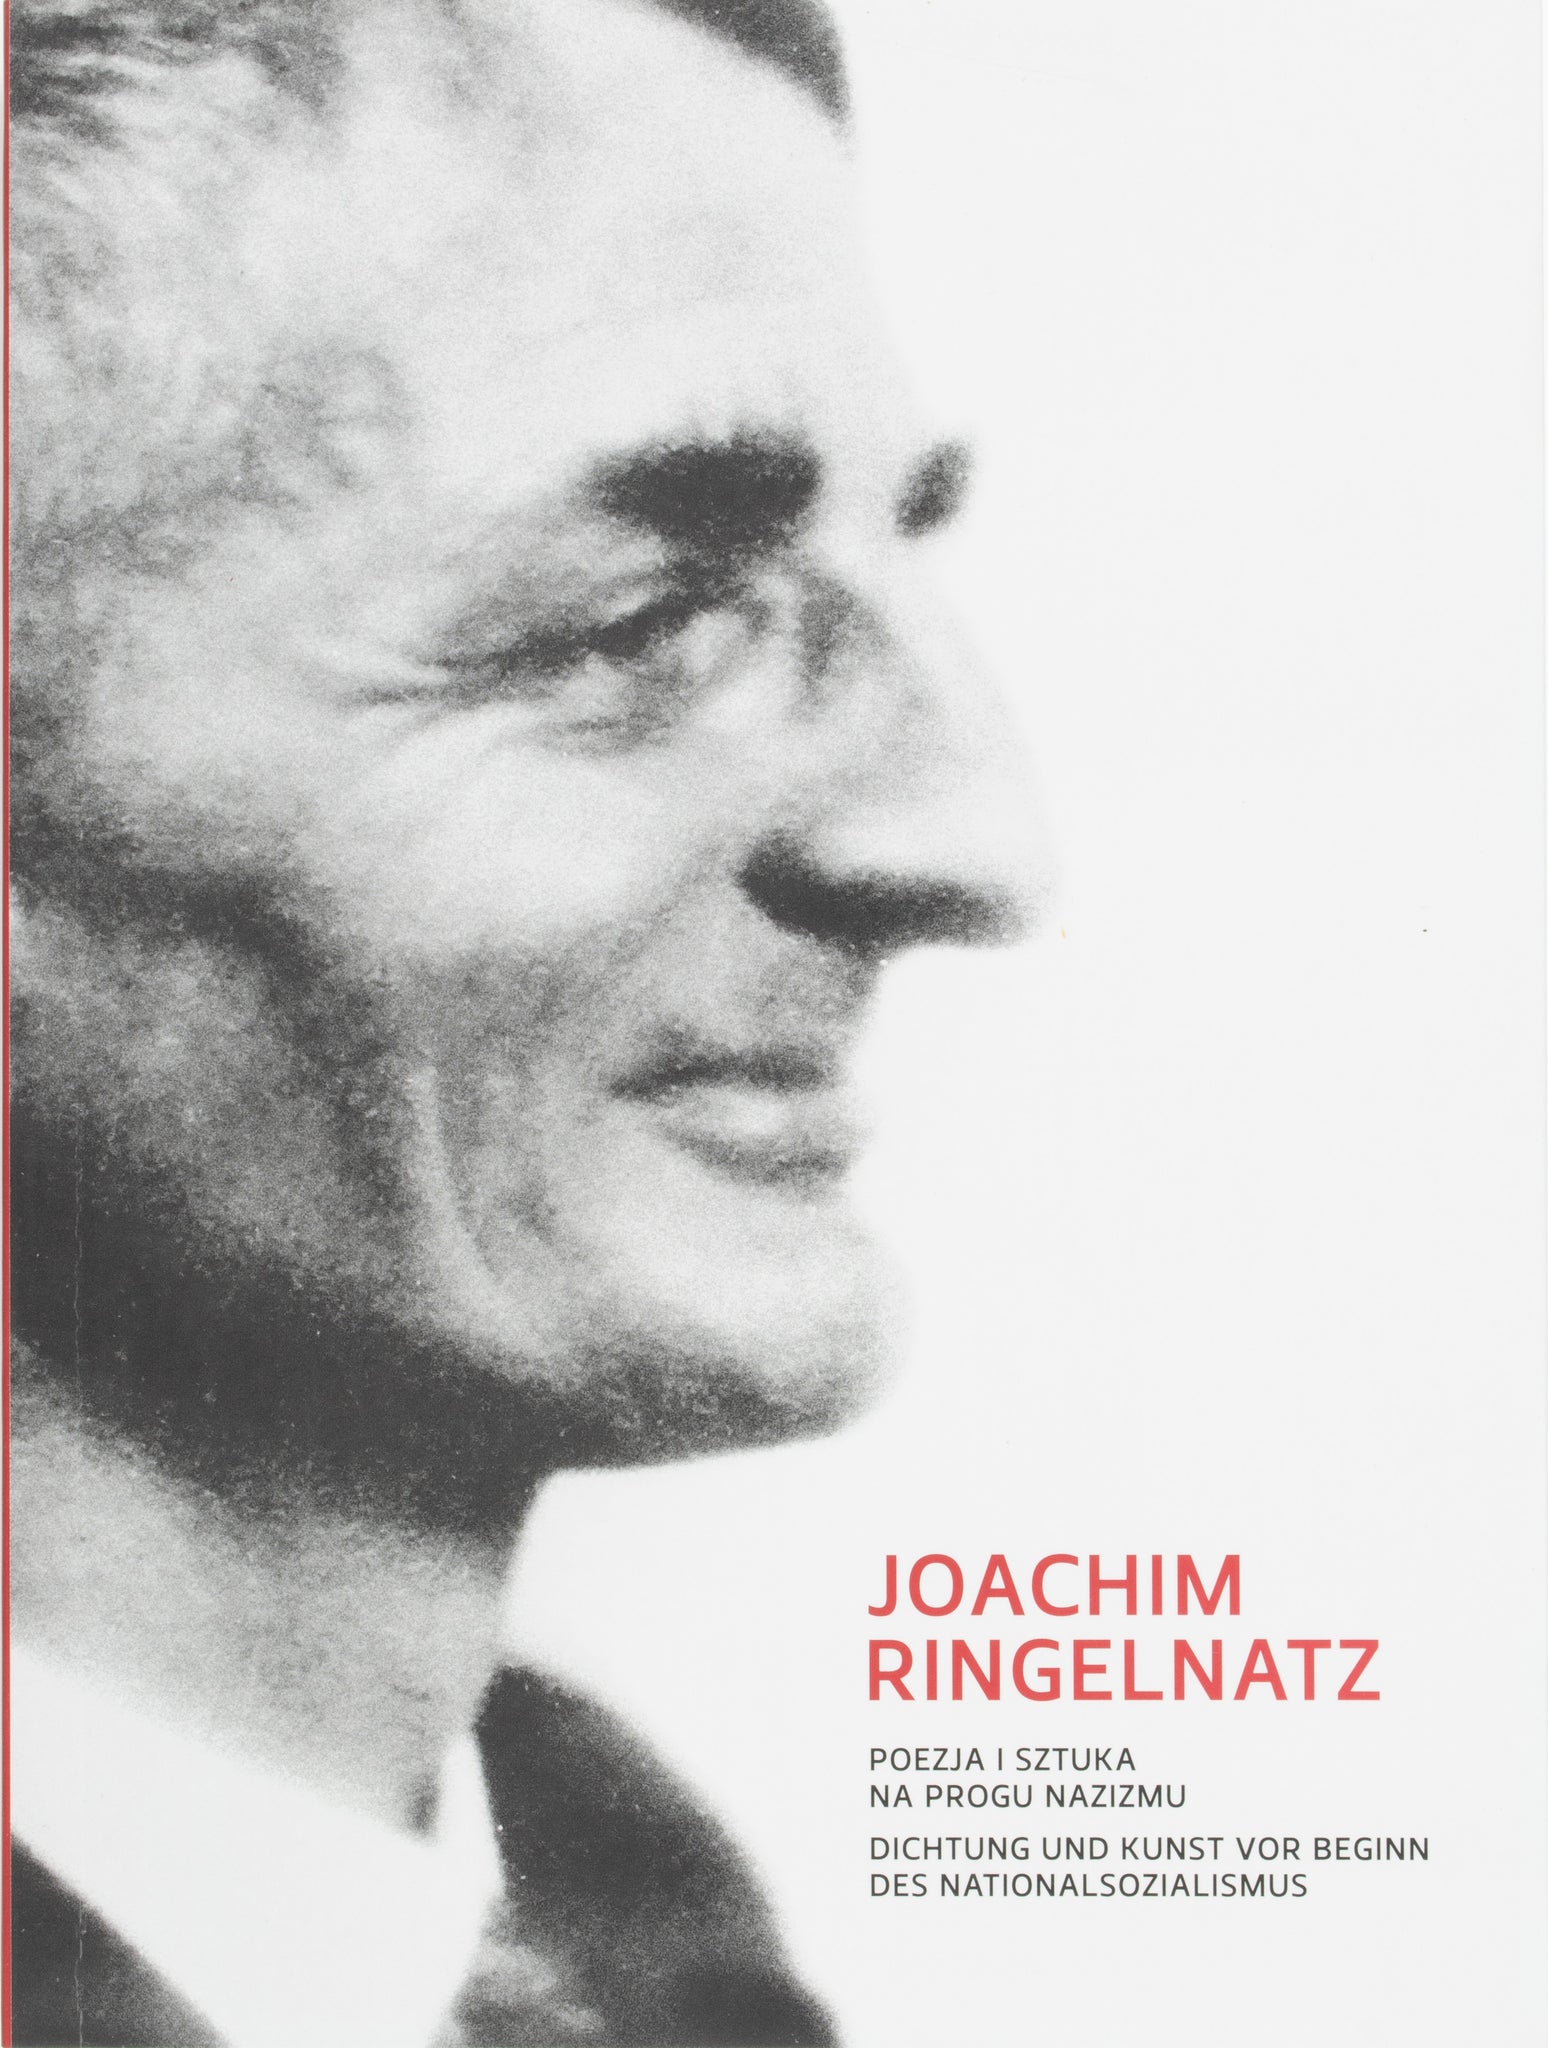 Joachim Ringelnatz - Dichtung und Kunst vor Beginn des Nationalsozialismus